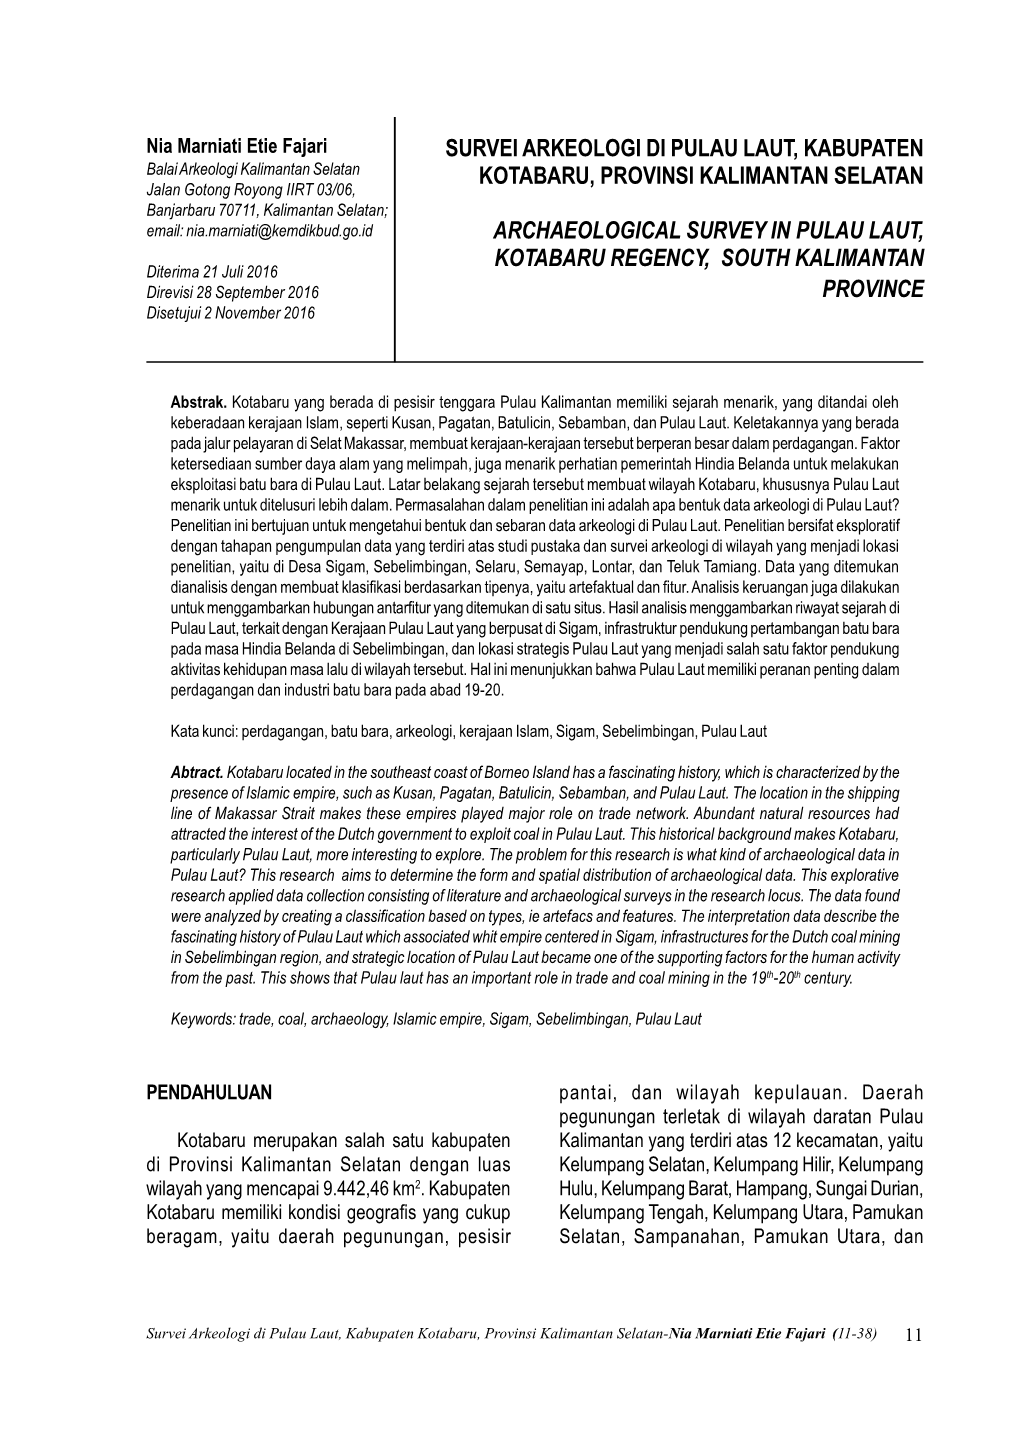 Survei Arkeologi Di Pulau Laut, Kabupaten Kotabaru, Provinsi Kalimantan Selatan Archaeological Survey in Pulau Laut, Kotabaru Re